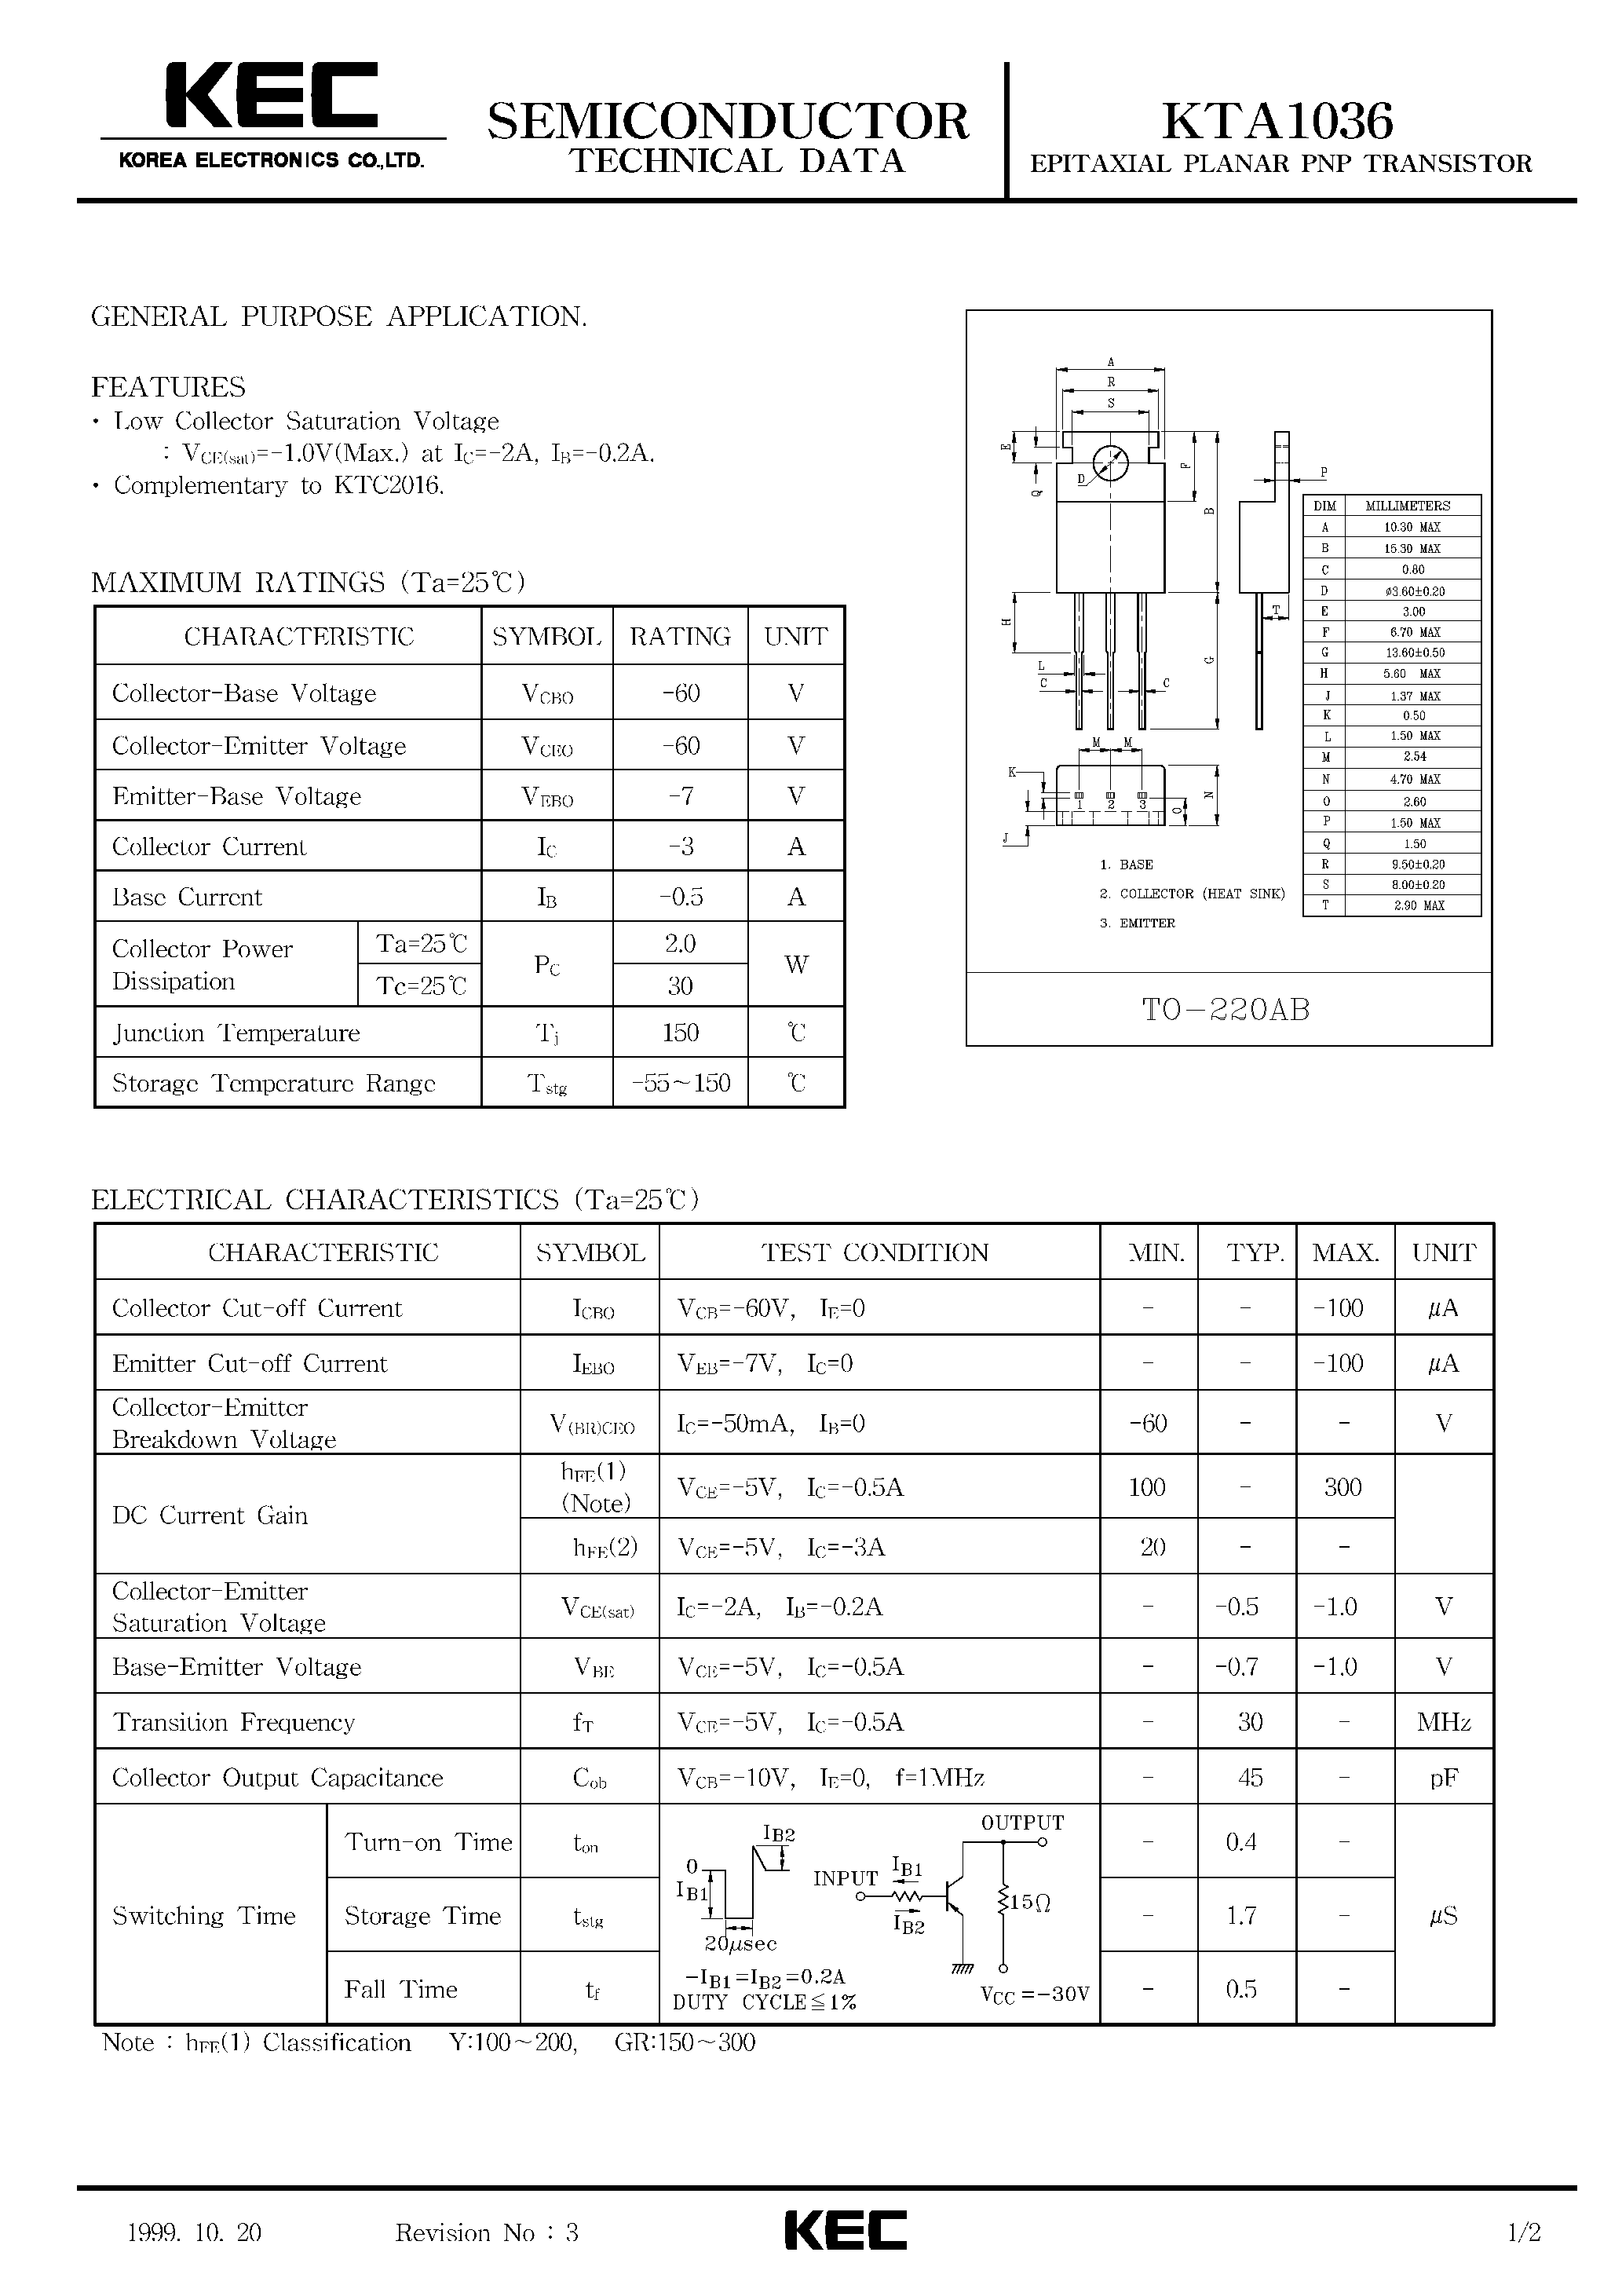 Datasheet KTA1036 - EPITAXIAL PLANAR PNP TRANSISTOR (GENERAL PURPOSE) page 1